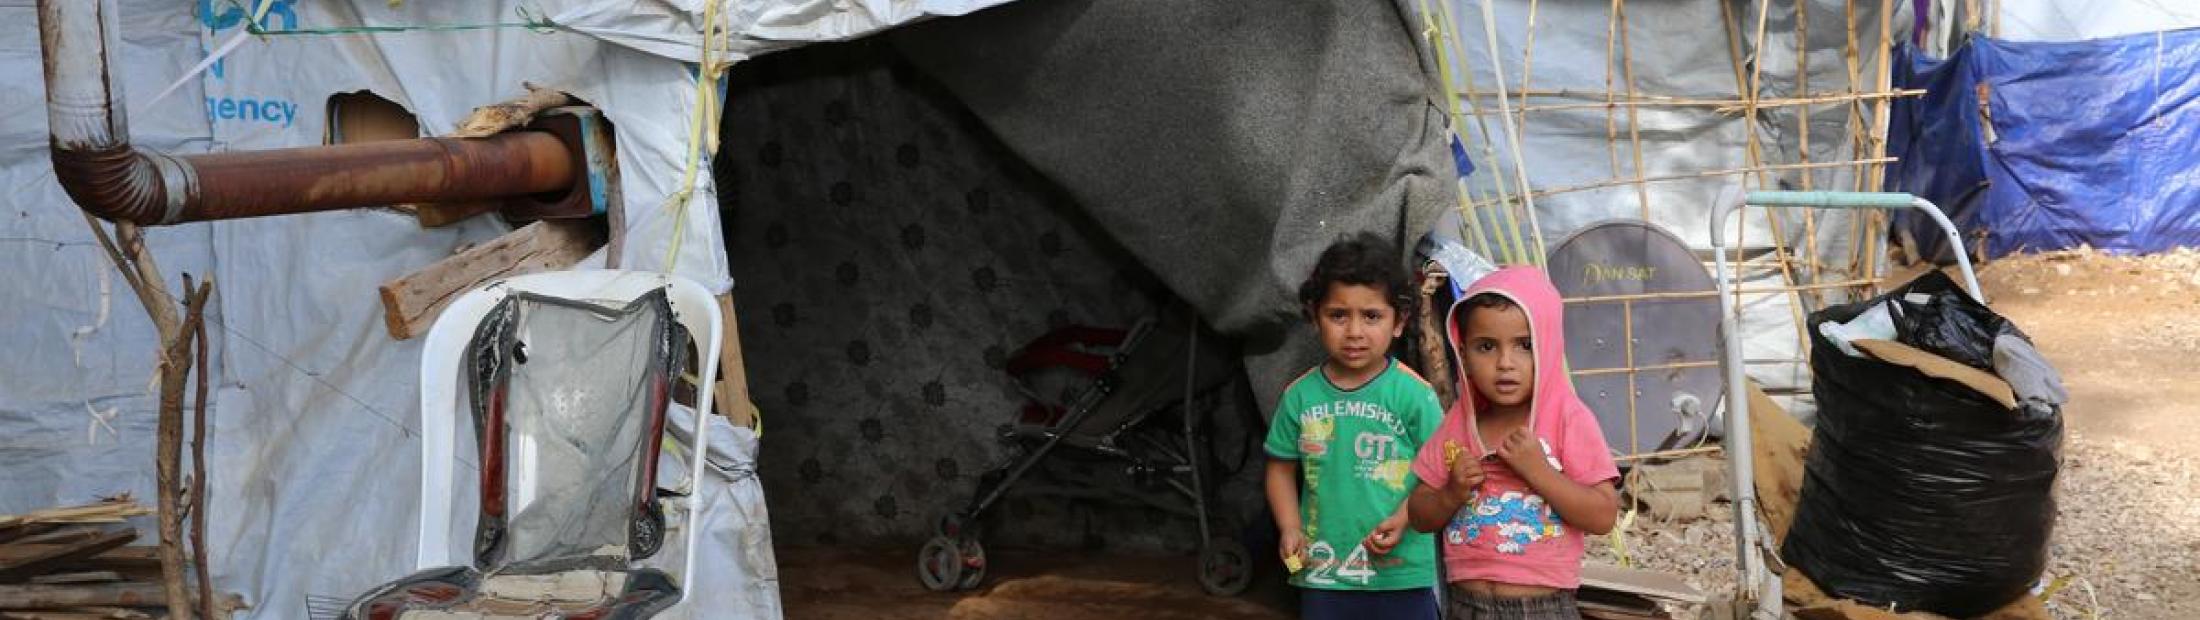 Casi 7 millones de desplazados necesitan ayuda en Siria